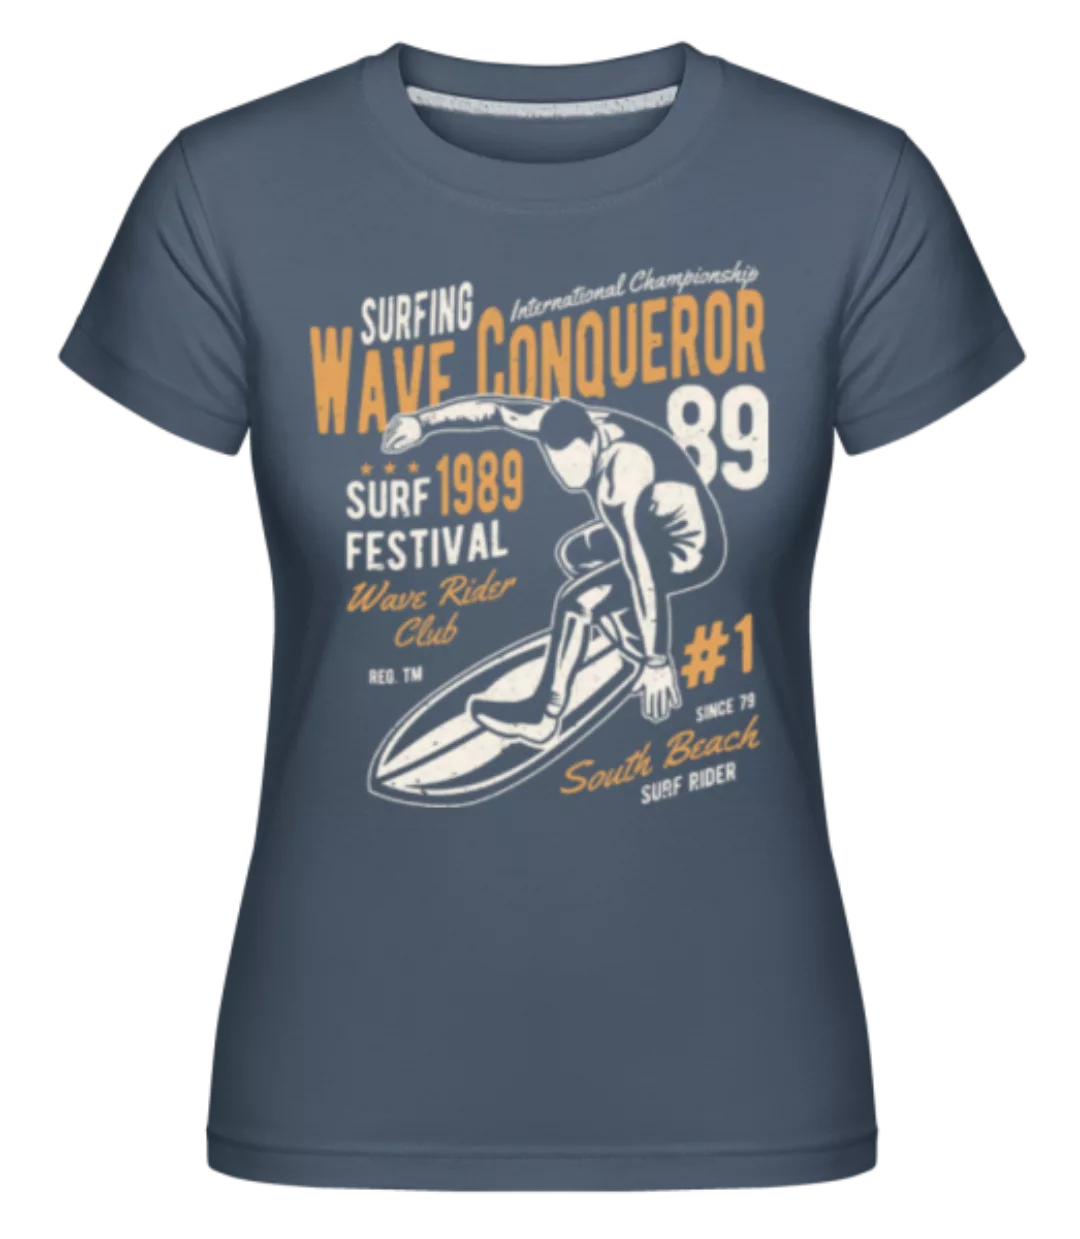 Wave Conqueror · Shirtinator Frauen T-Shirt günstig online kaufen